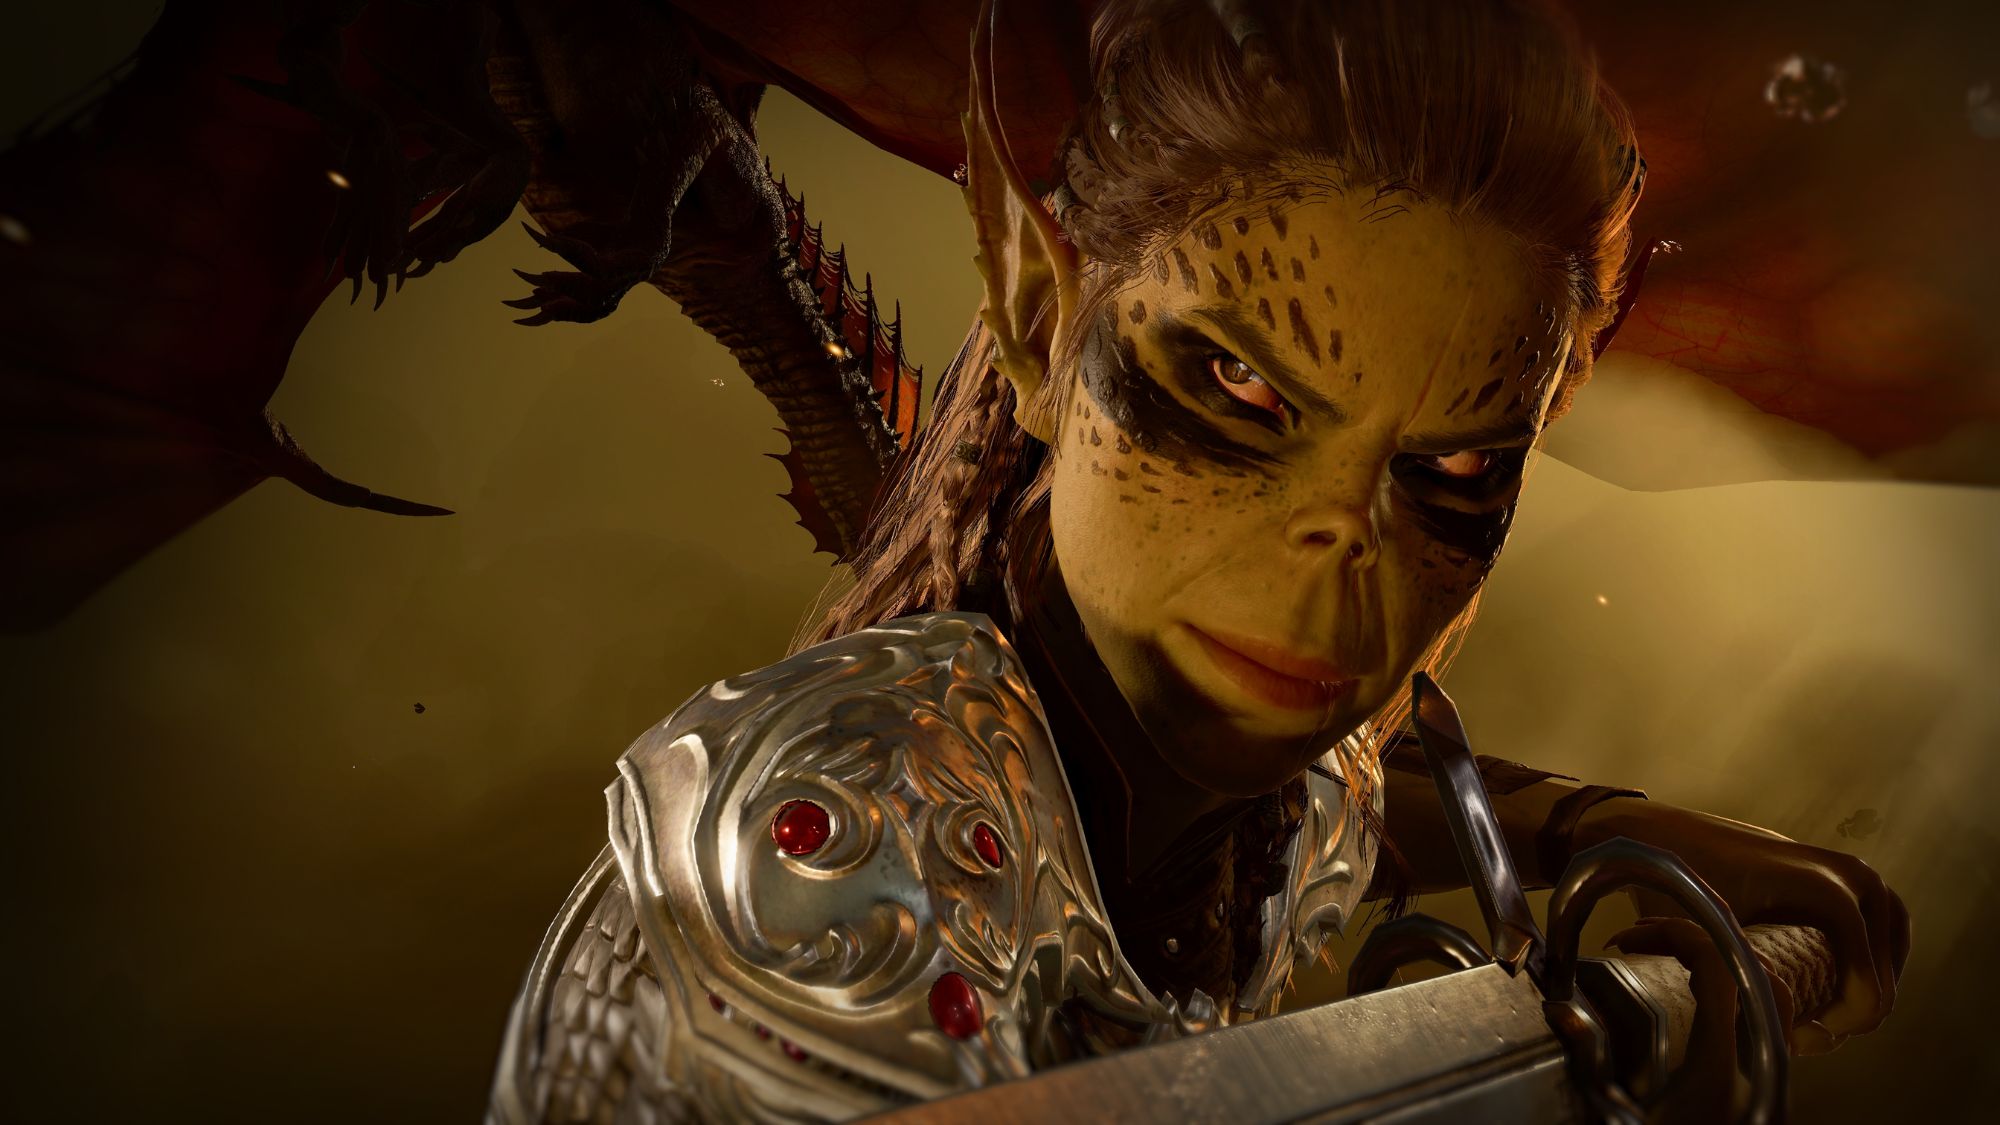 Сценарист Dragon Age защищает Лаэ'зель из Baldur's Gate 3, говоря, что игроки менее снисходительны к женским персонажам